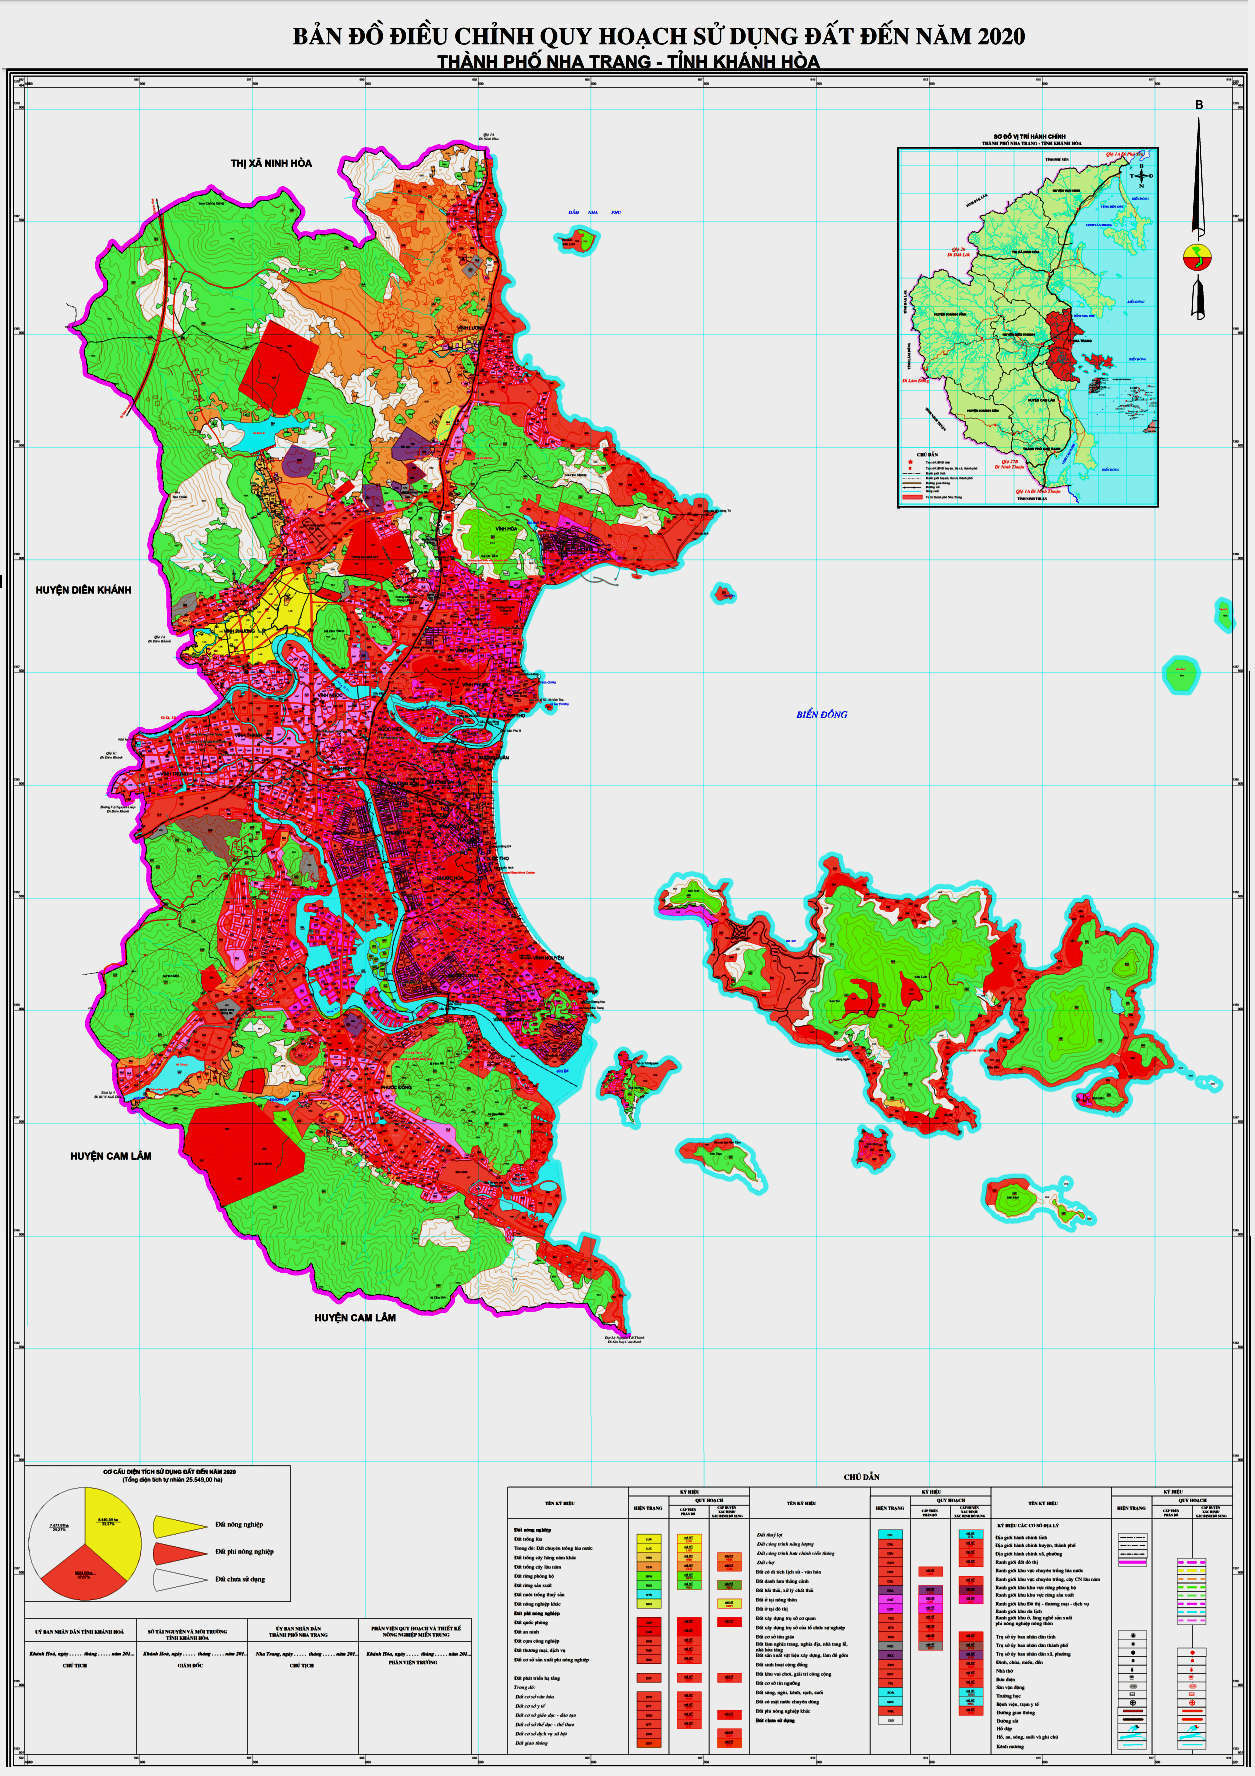 Bản đồ quy hoạch sử dụng đất thành phố Nha Trang tỉnh Khánh Hòa đến năm 2020